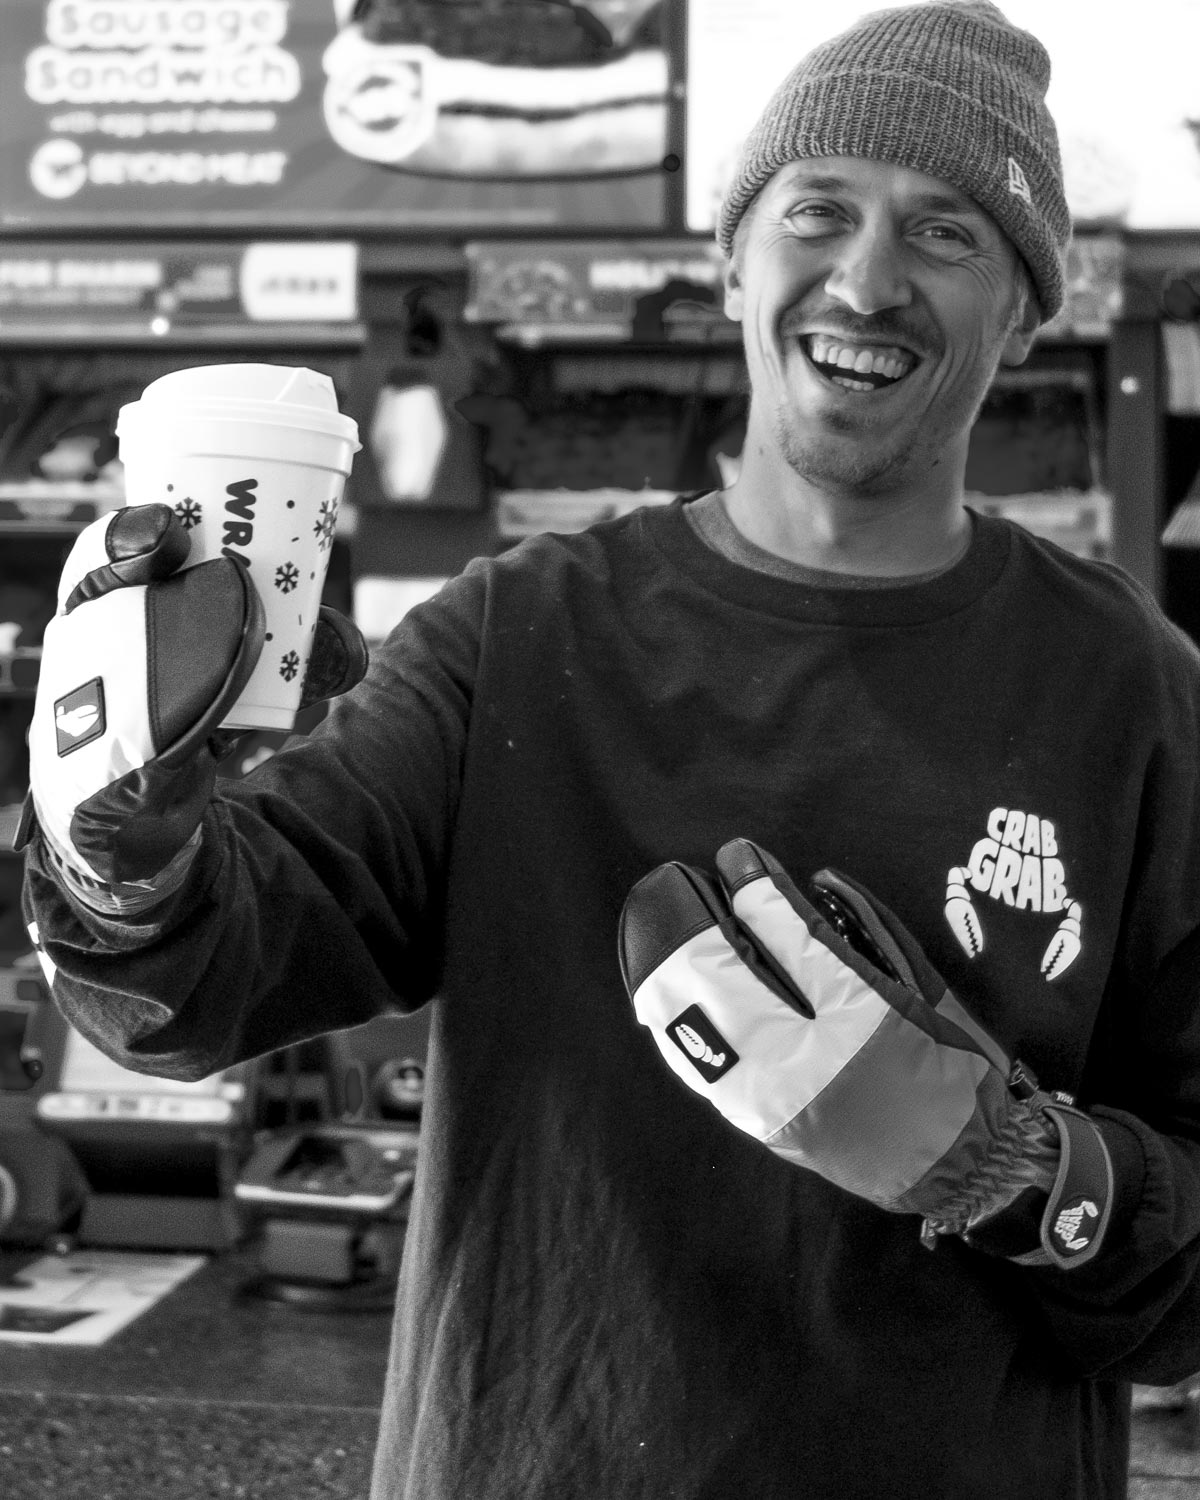 Crab Grab Slap Mitt Snowboard Gloves - Bones – Daddies Board Shop